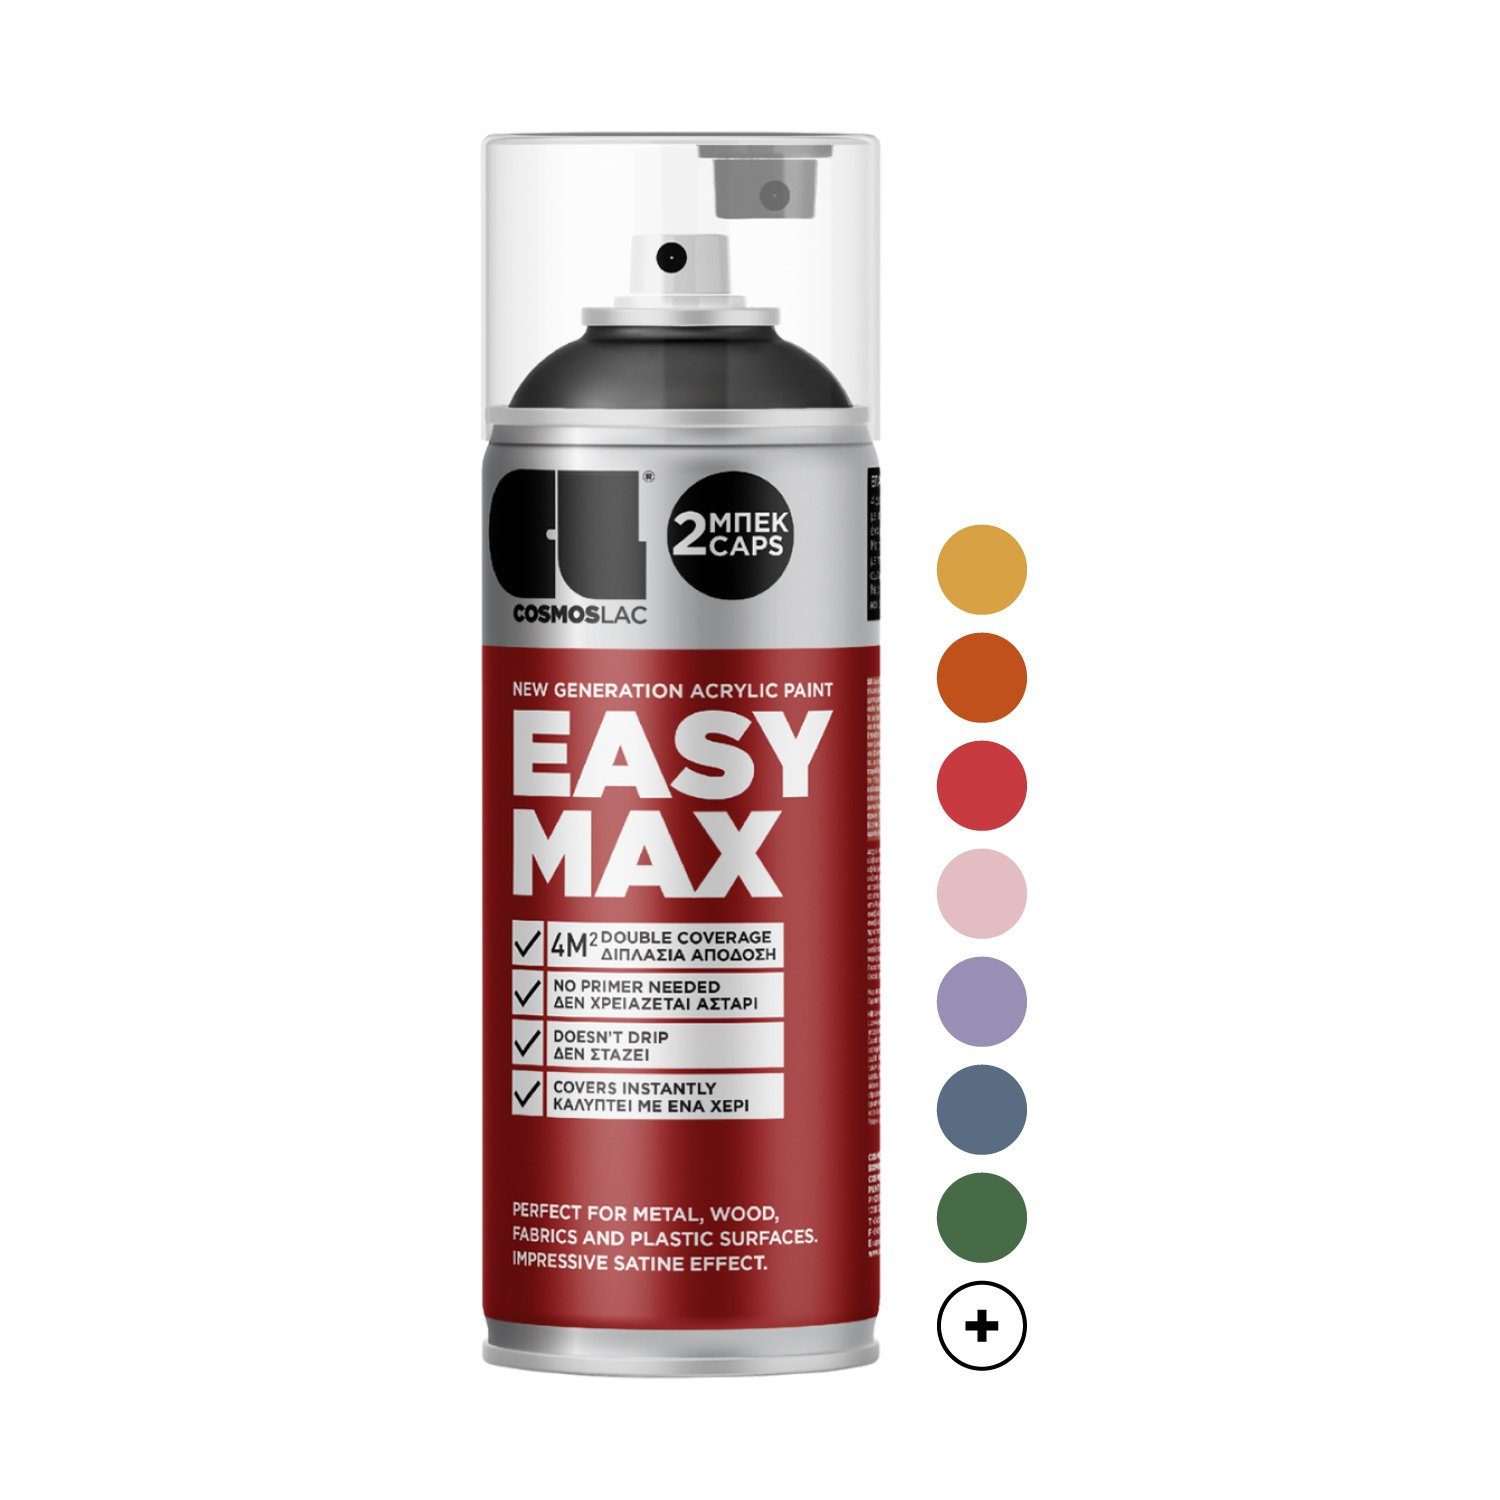 COSMOS LAC Sprühflasche EASYMAX Sprühlack matt mit extrem hoher Deckkraft in vielen versch. Farben - Spraydosen Sprühfarbe DIY Lack Acryllack Spray Paint Farbspray Sprühdose Lackspray, zwei Sprühkappen inkl.